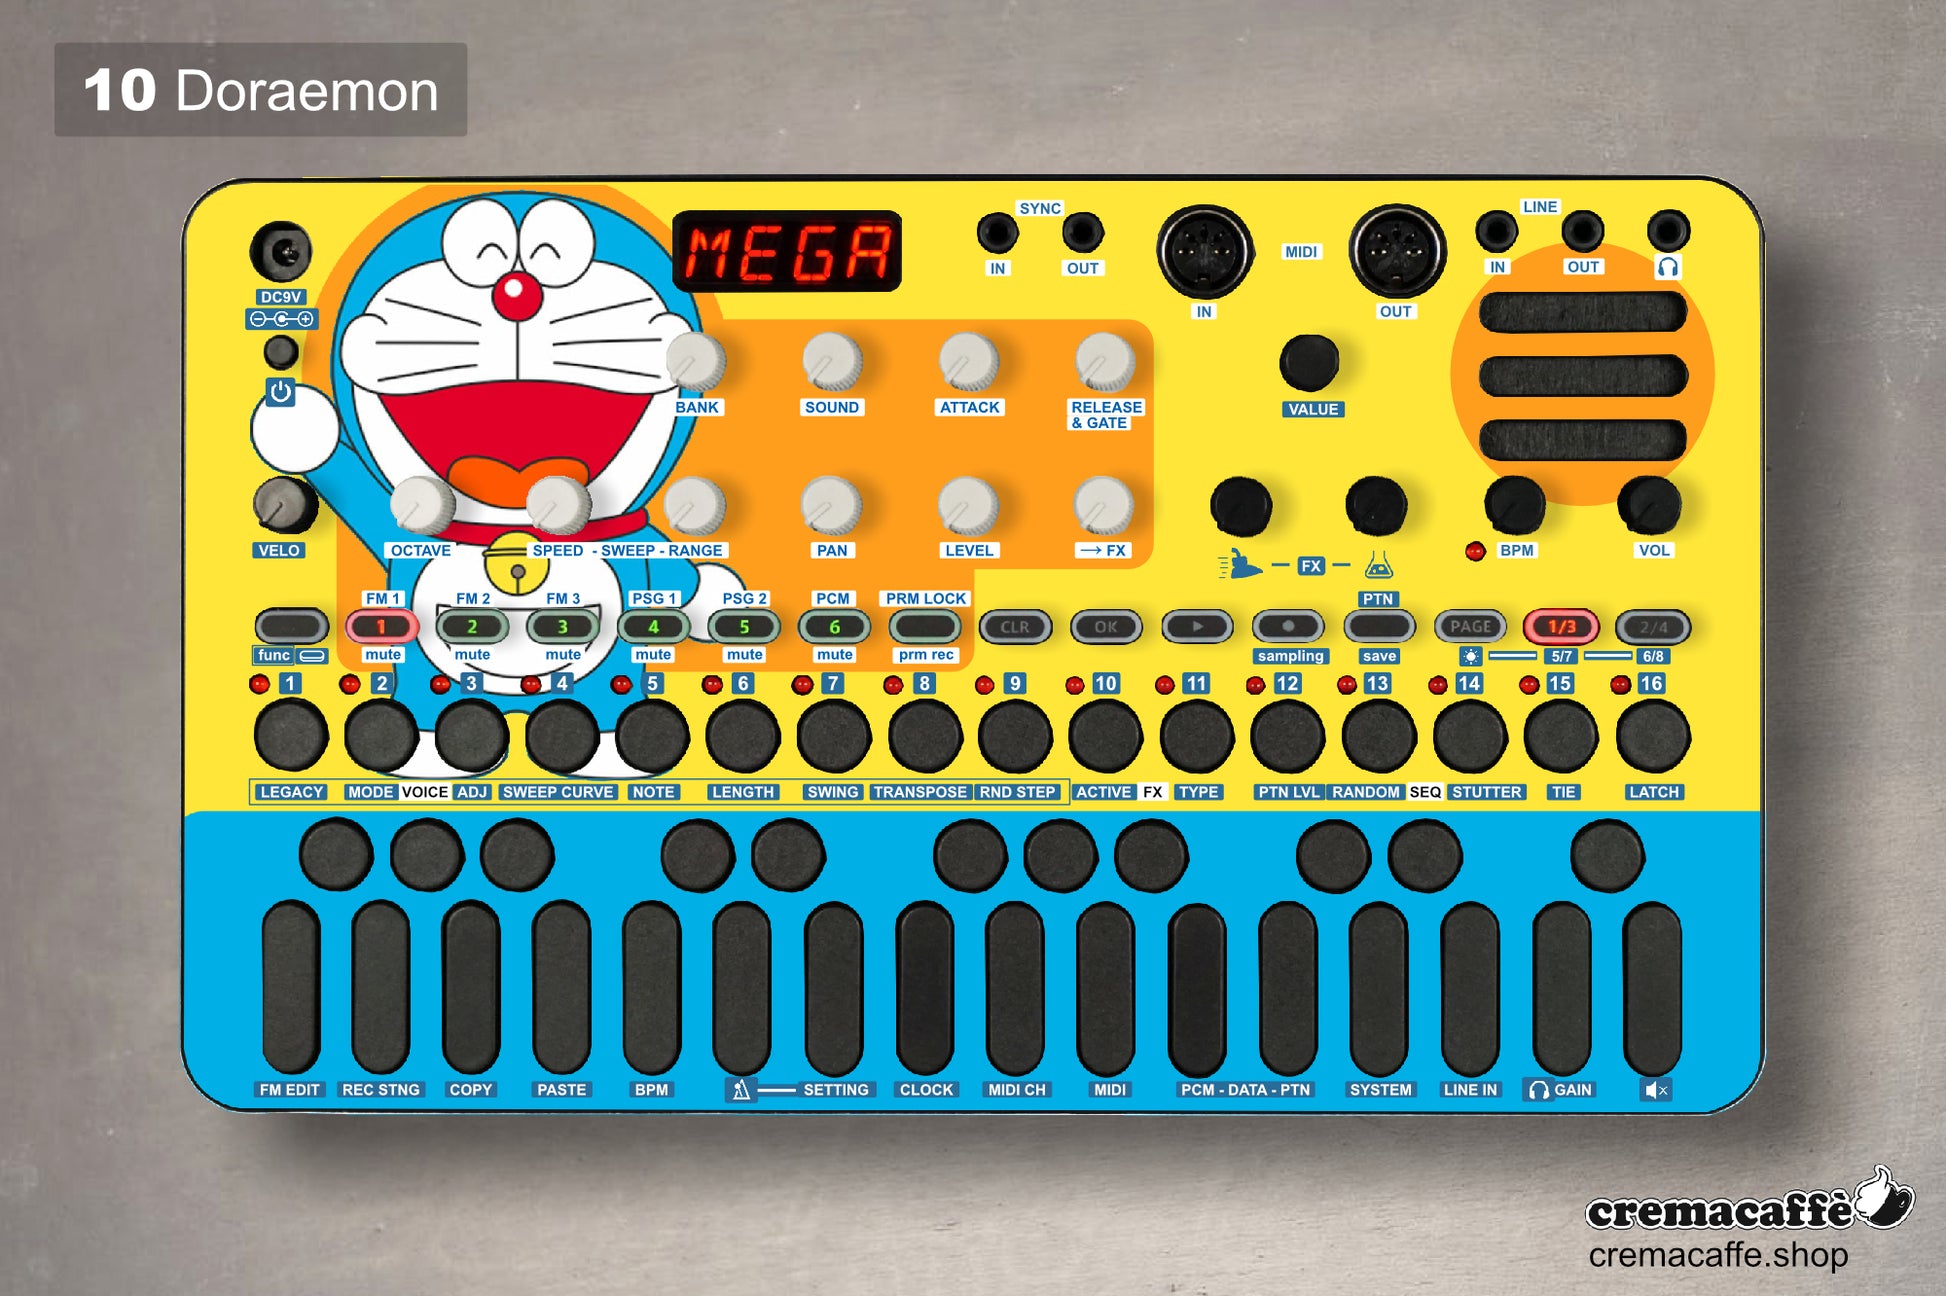 Sonicware LIVEN Skin - Doraemon - Cremacaffe Design